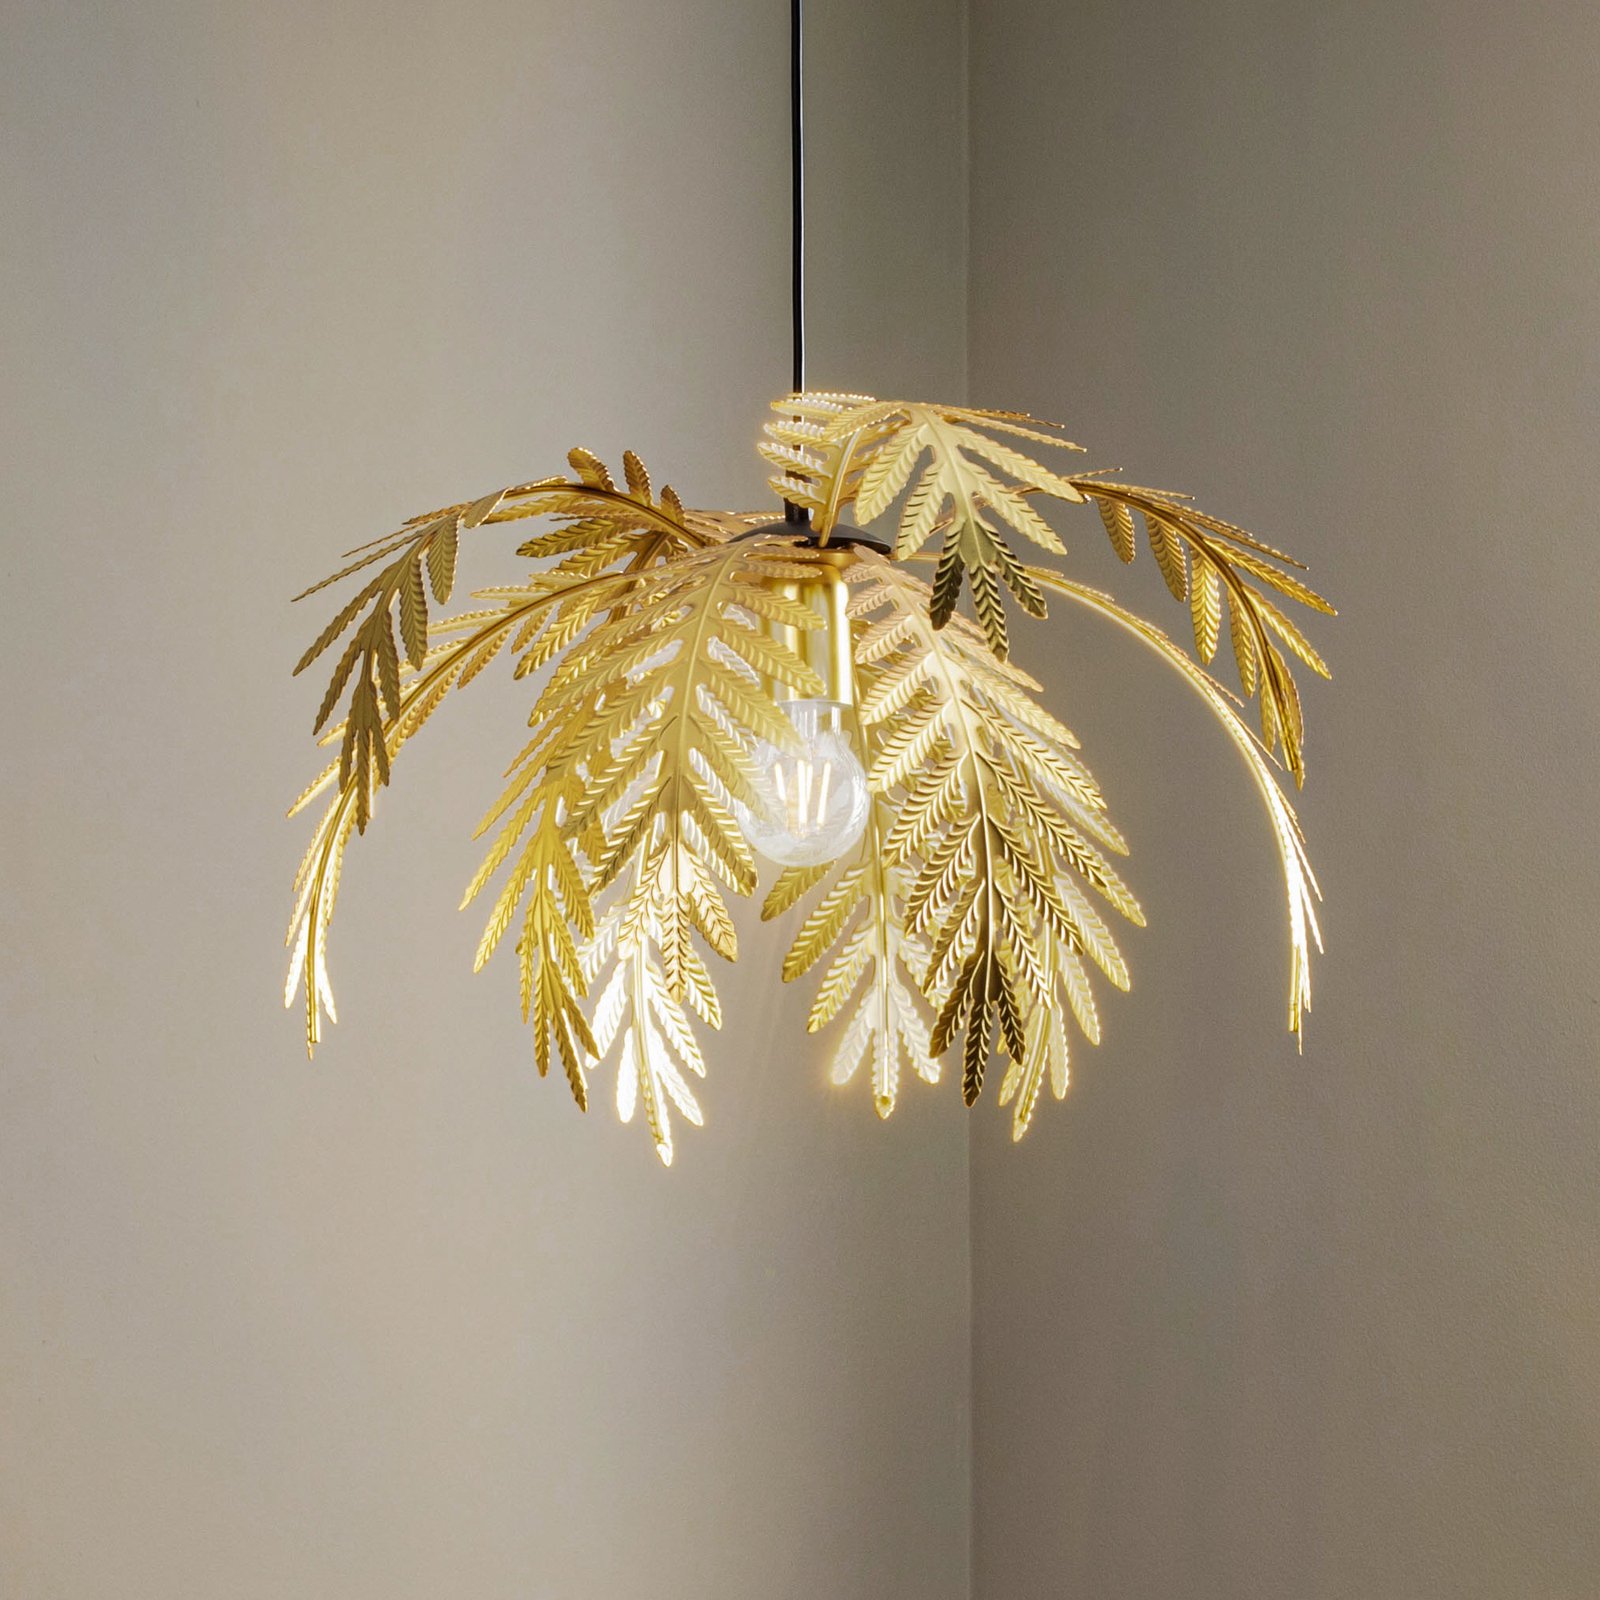 Függő lámpa Dubai, pálma dekoráció, Ø 50 cm, arany